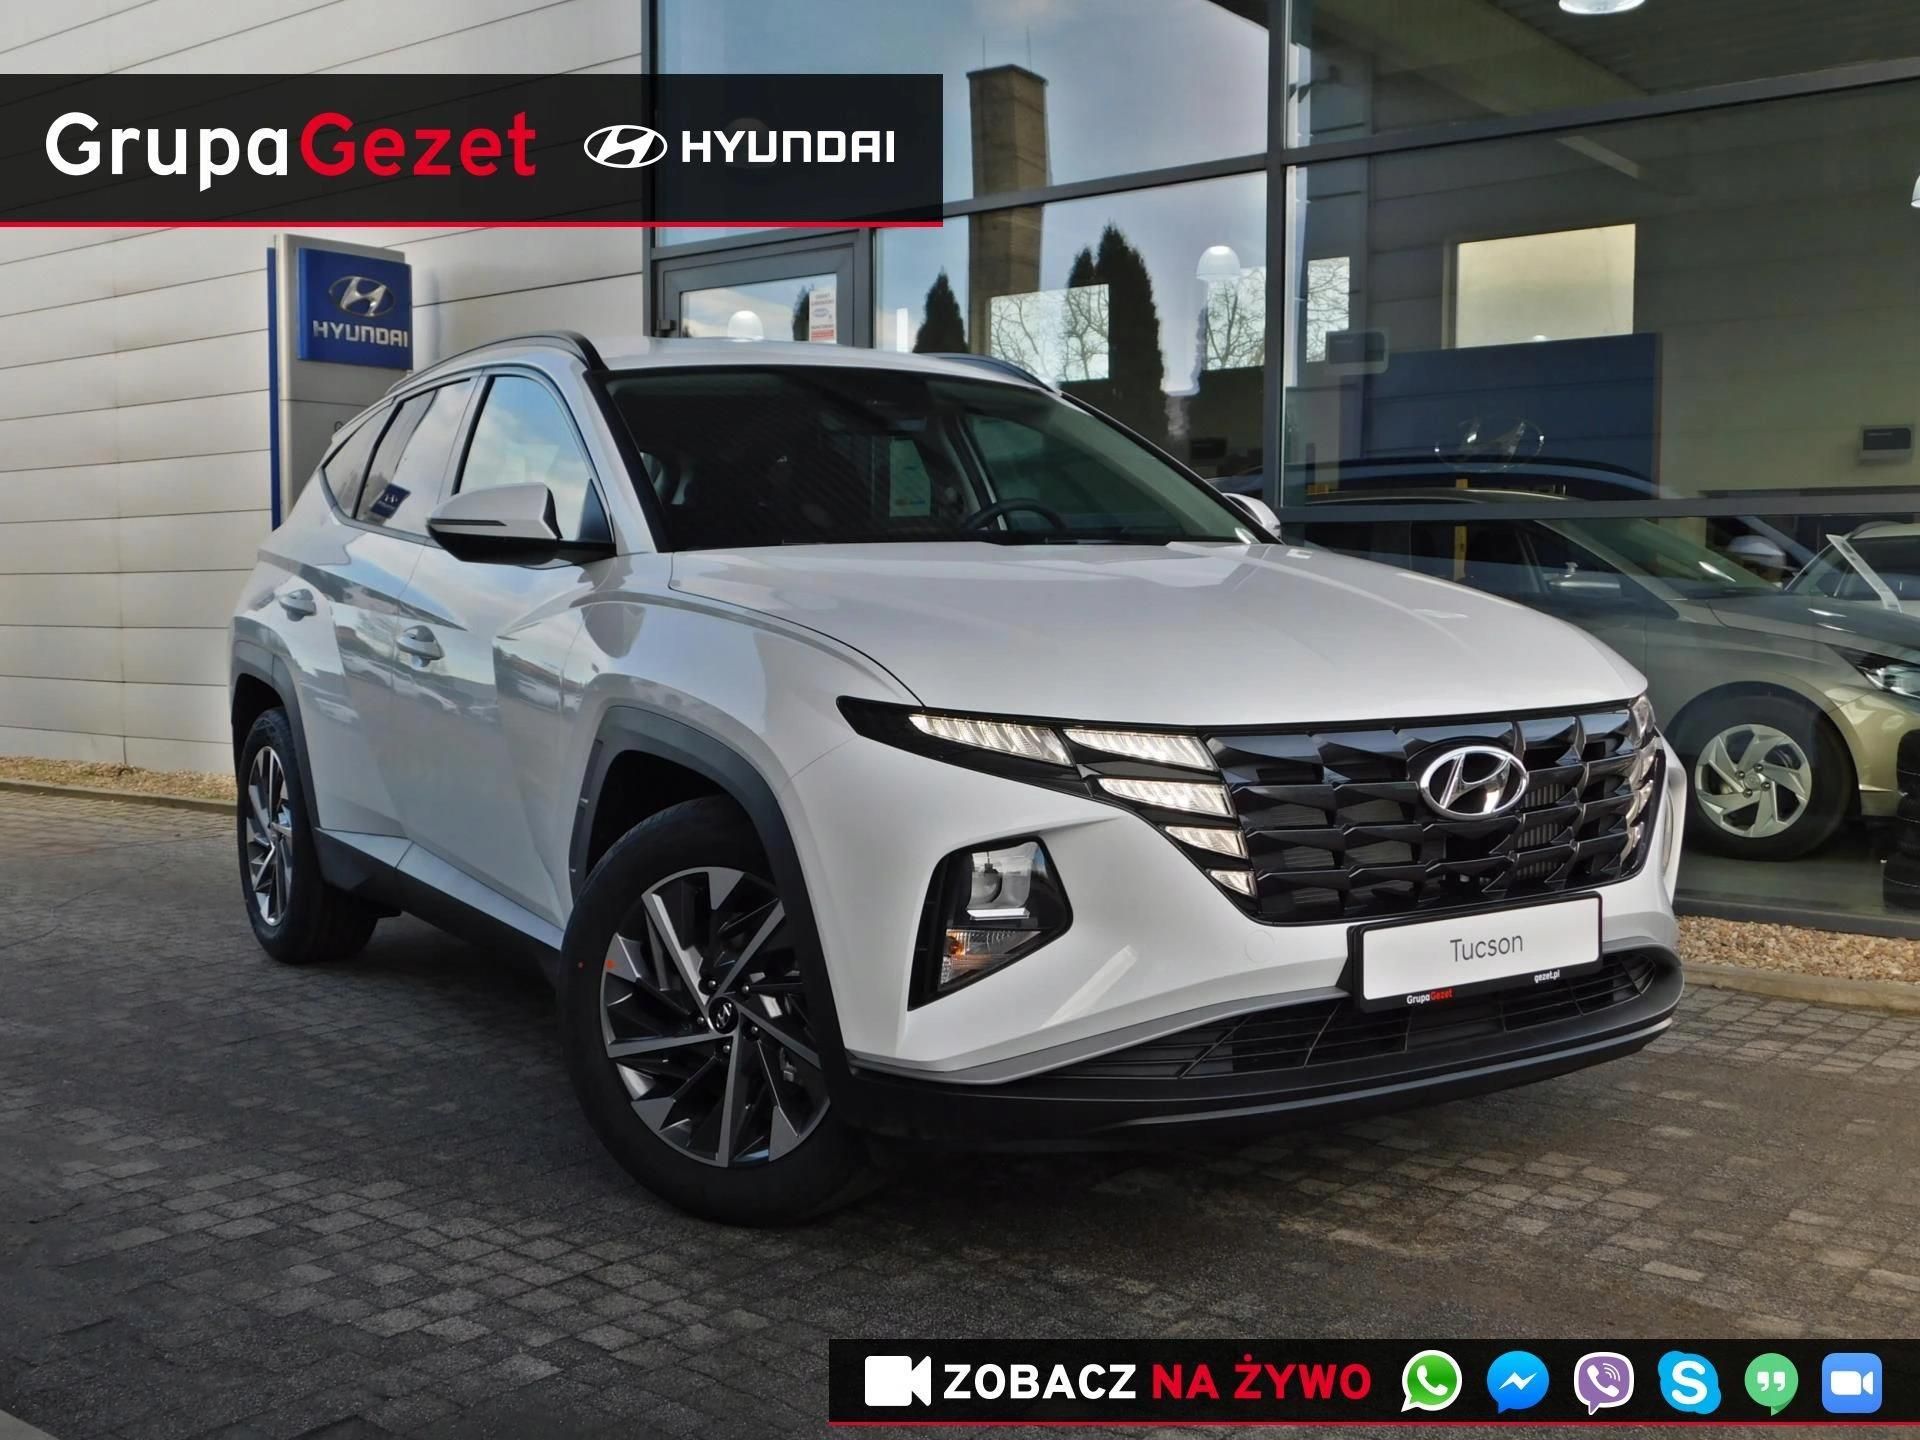 Hyundai Tucson Nowy Model 2021 1.6 T-Gdi Benzyna 1 - Opinie I Ceny Na Ceneo.pl